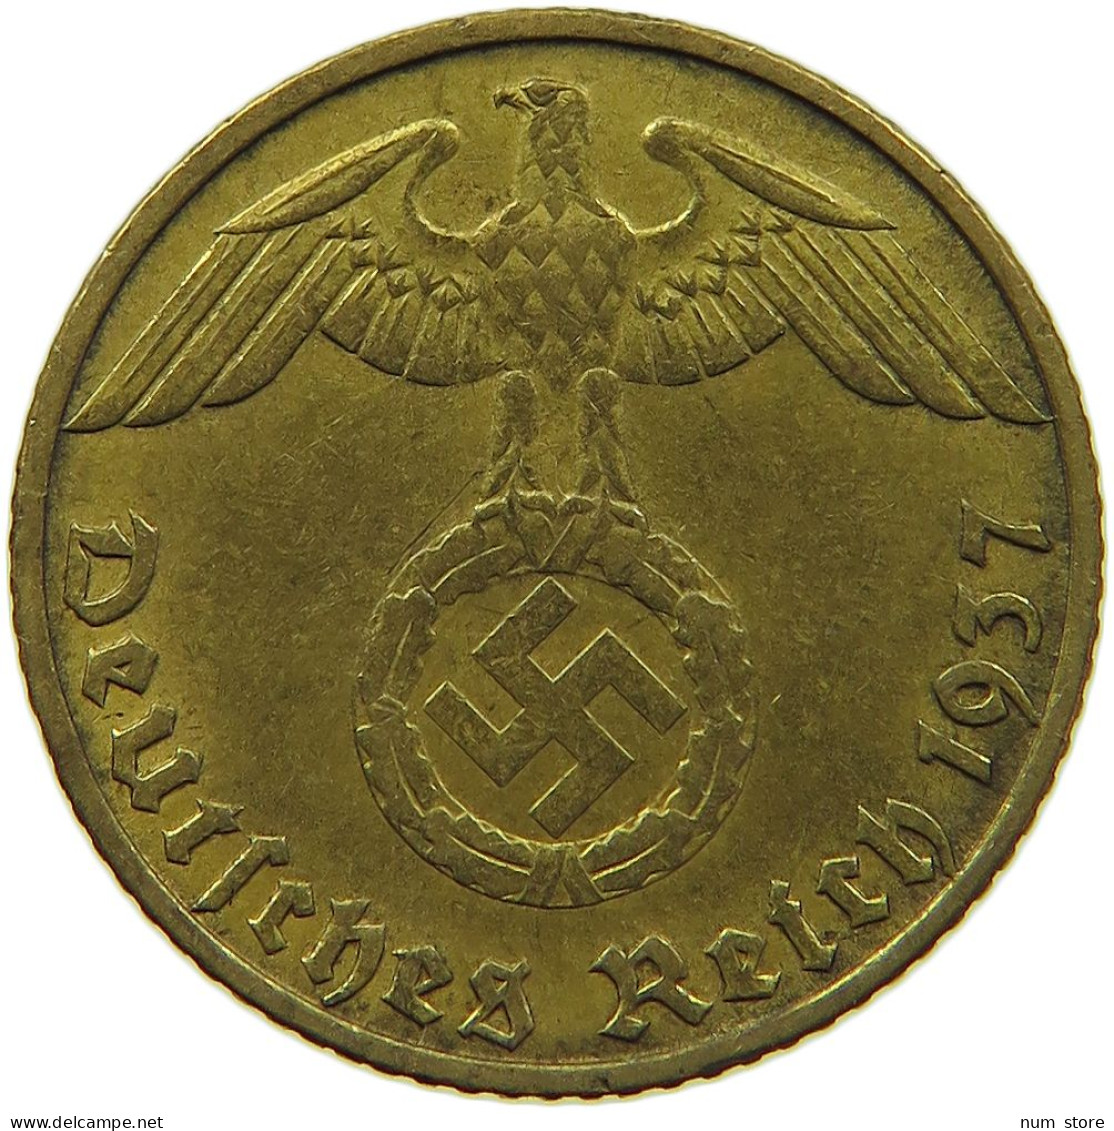 GERMANY 5 REICHSPFENNIG 1937 J #s091 0643 - 5 Reichspfennig